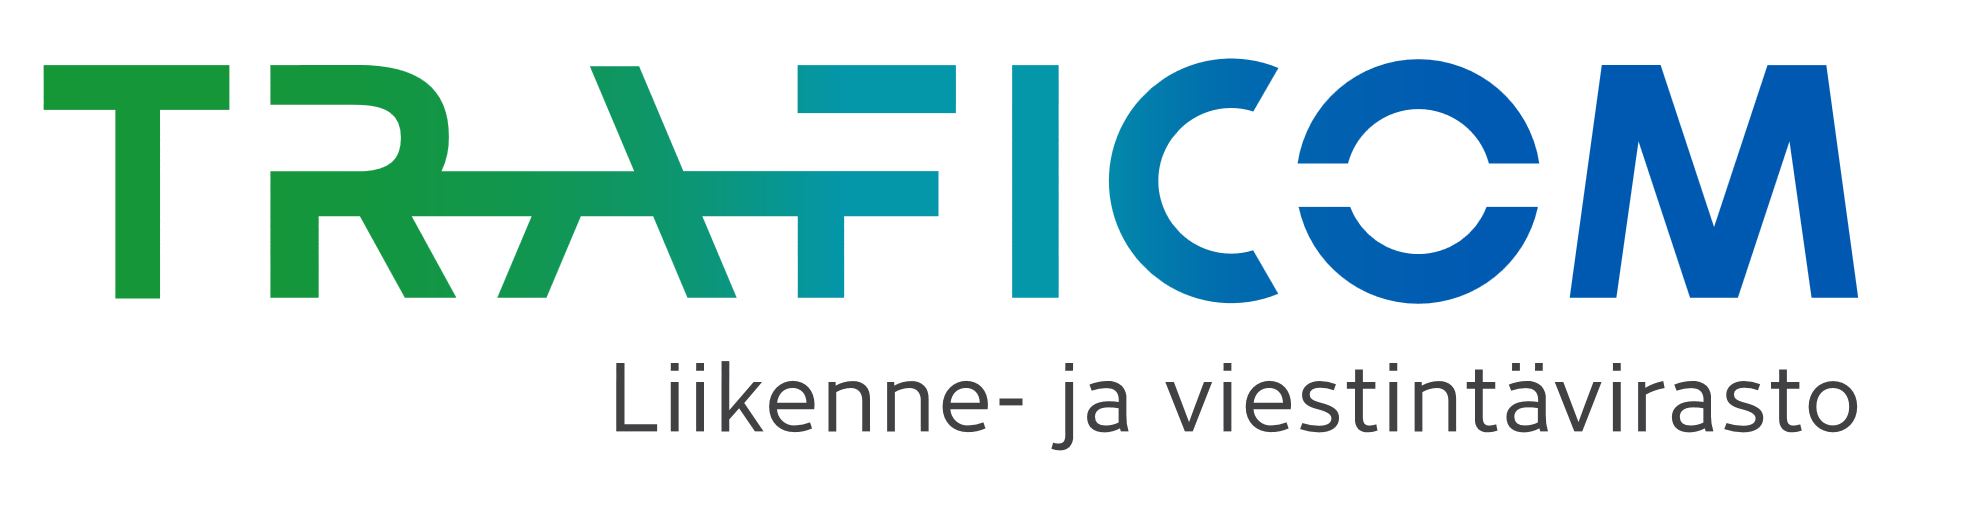 Logo of organization Transport- och kommunikationsverket Traficom